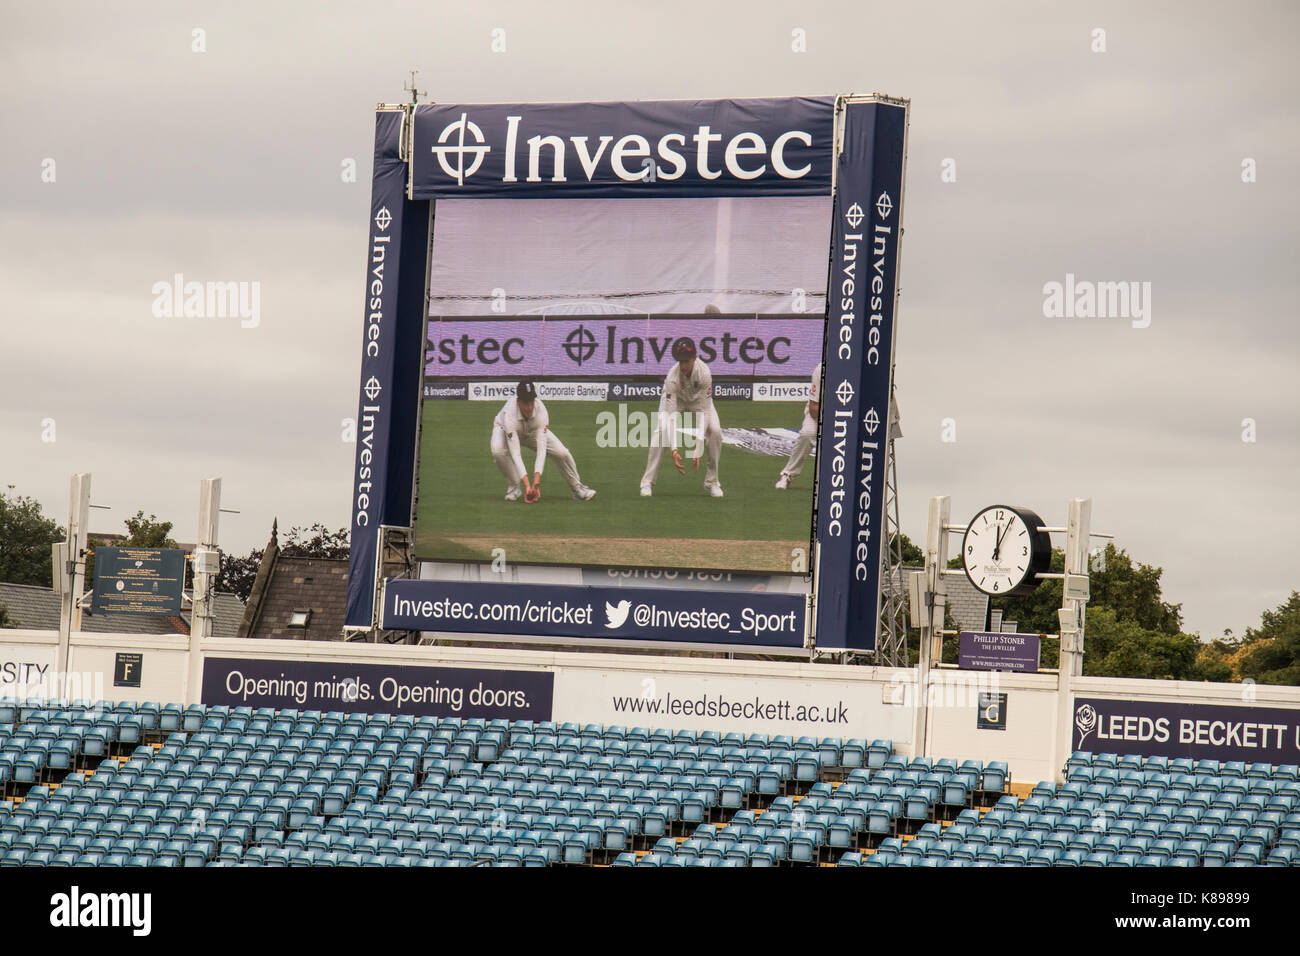 Die elektronische Video replay Board bei Headingley Cricket Ground, Leeds, England Spieler und Investec - die Sponsoren. Stockfoto